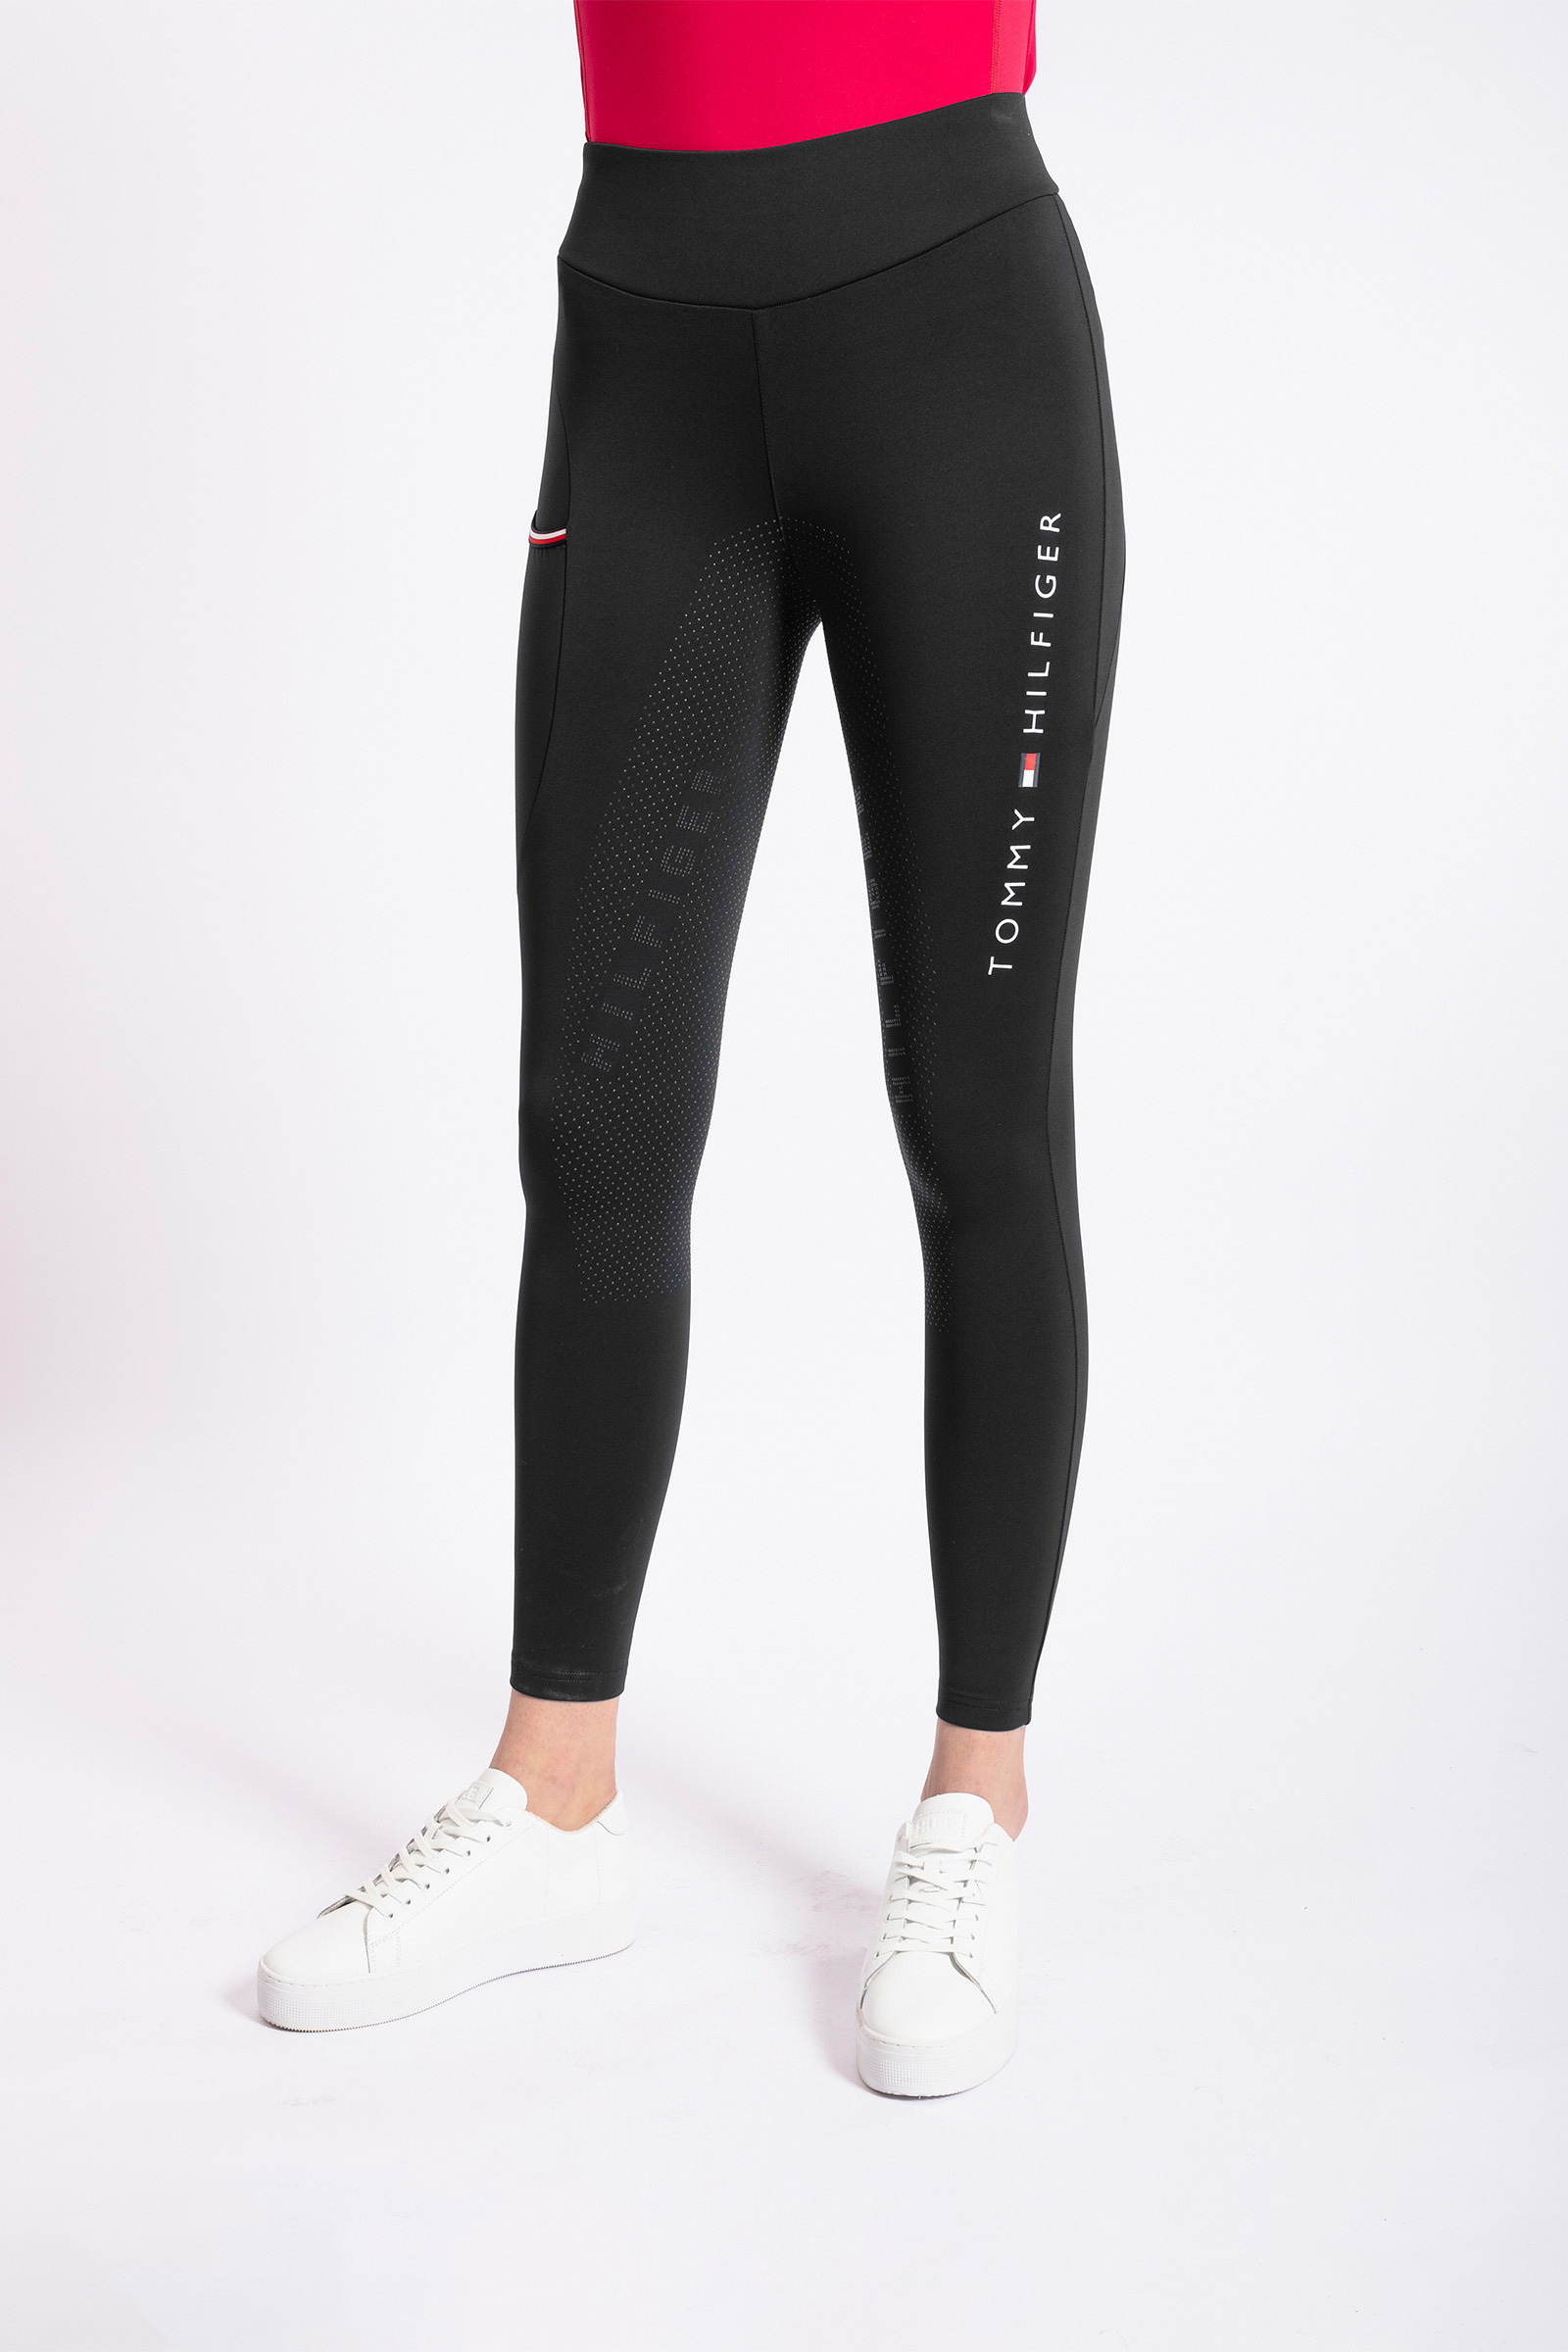 Buy Tommy Hilfiger Sport women sportswear fit high rise training leggings  black red Online